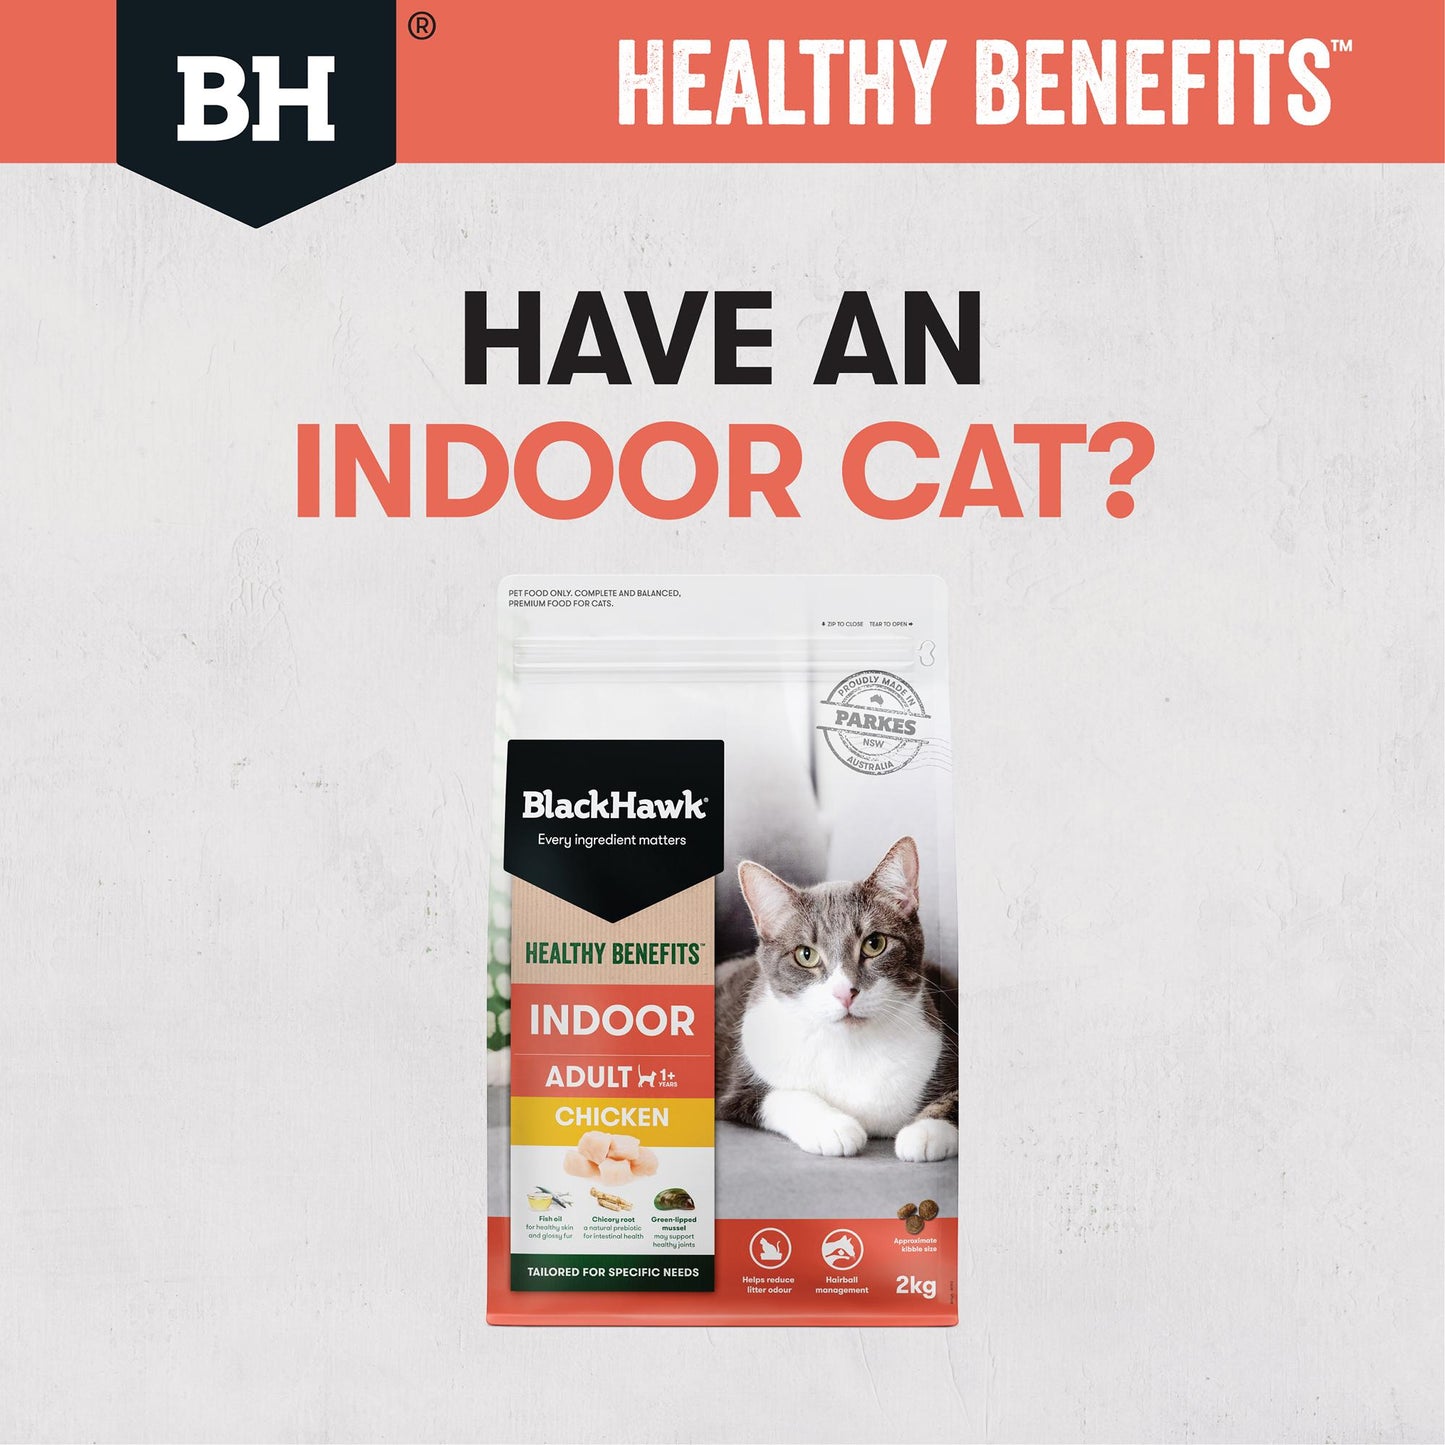 Black Hawk Healthy Benefits Indoor Chicken Dry Cat Food